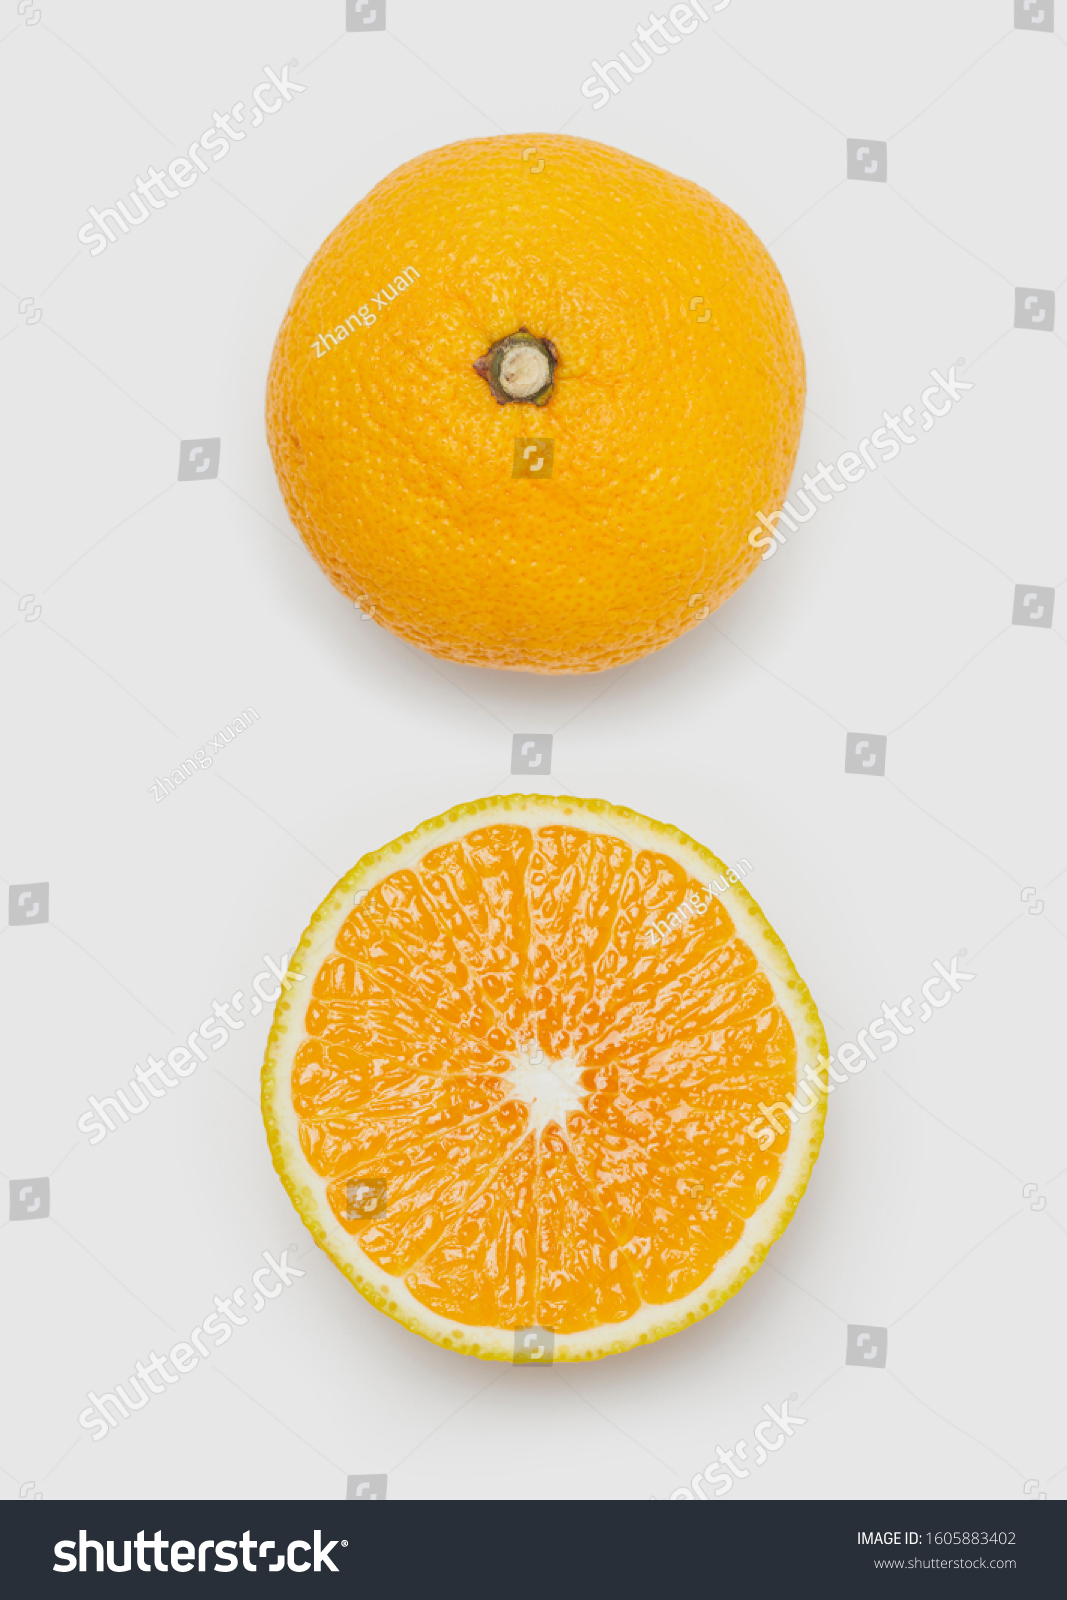 Ripe tasty orange wits slice isolated on white background. #1605883402